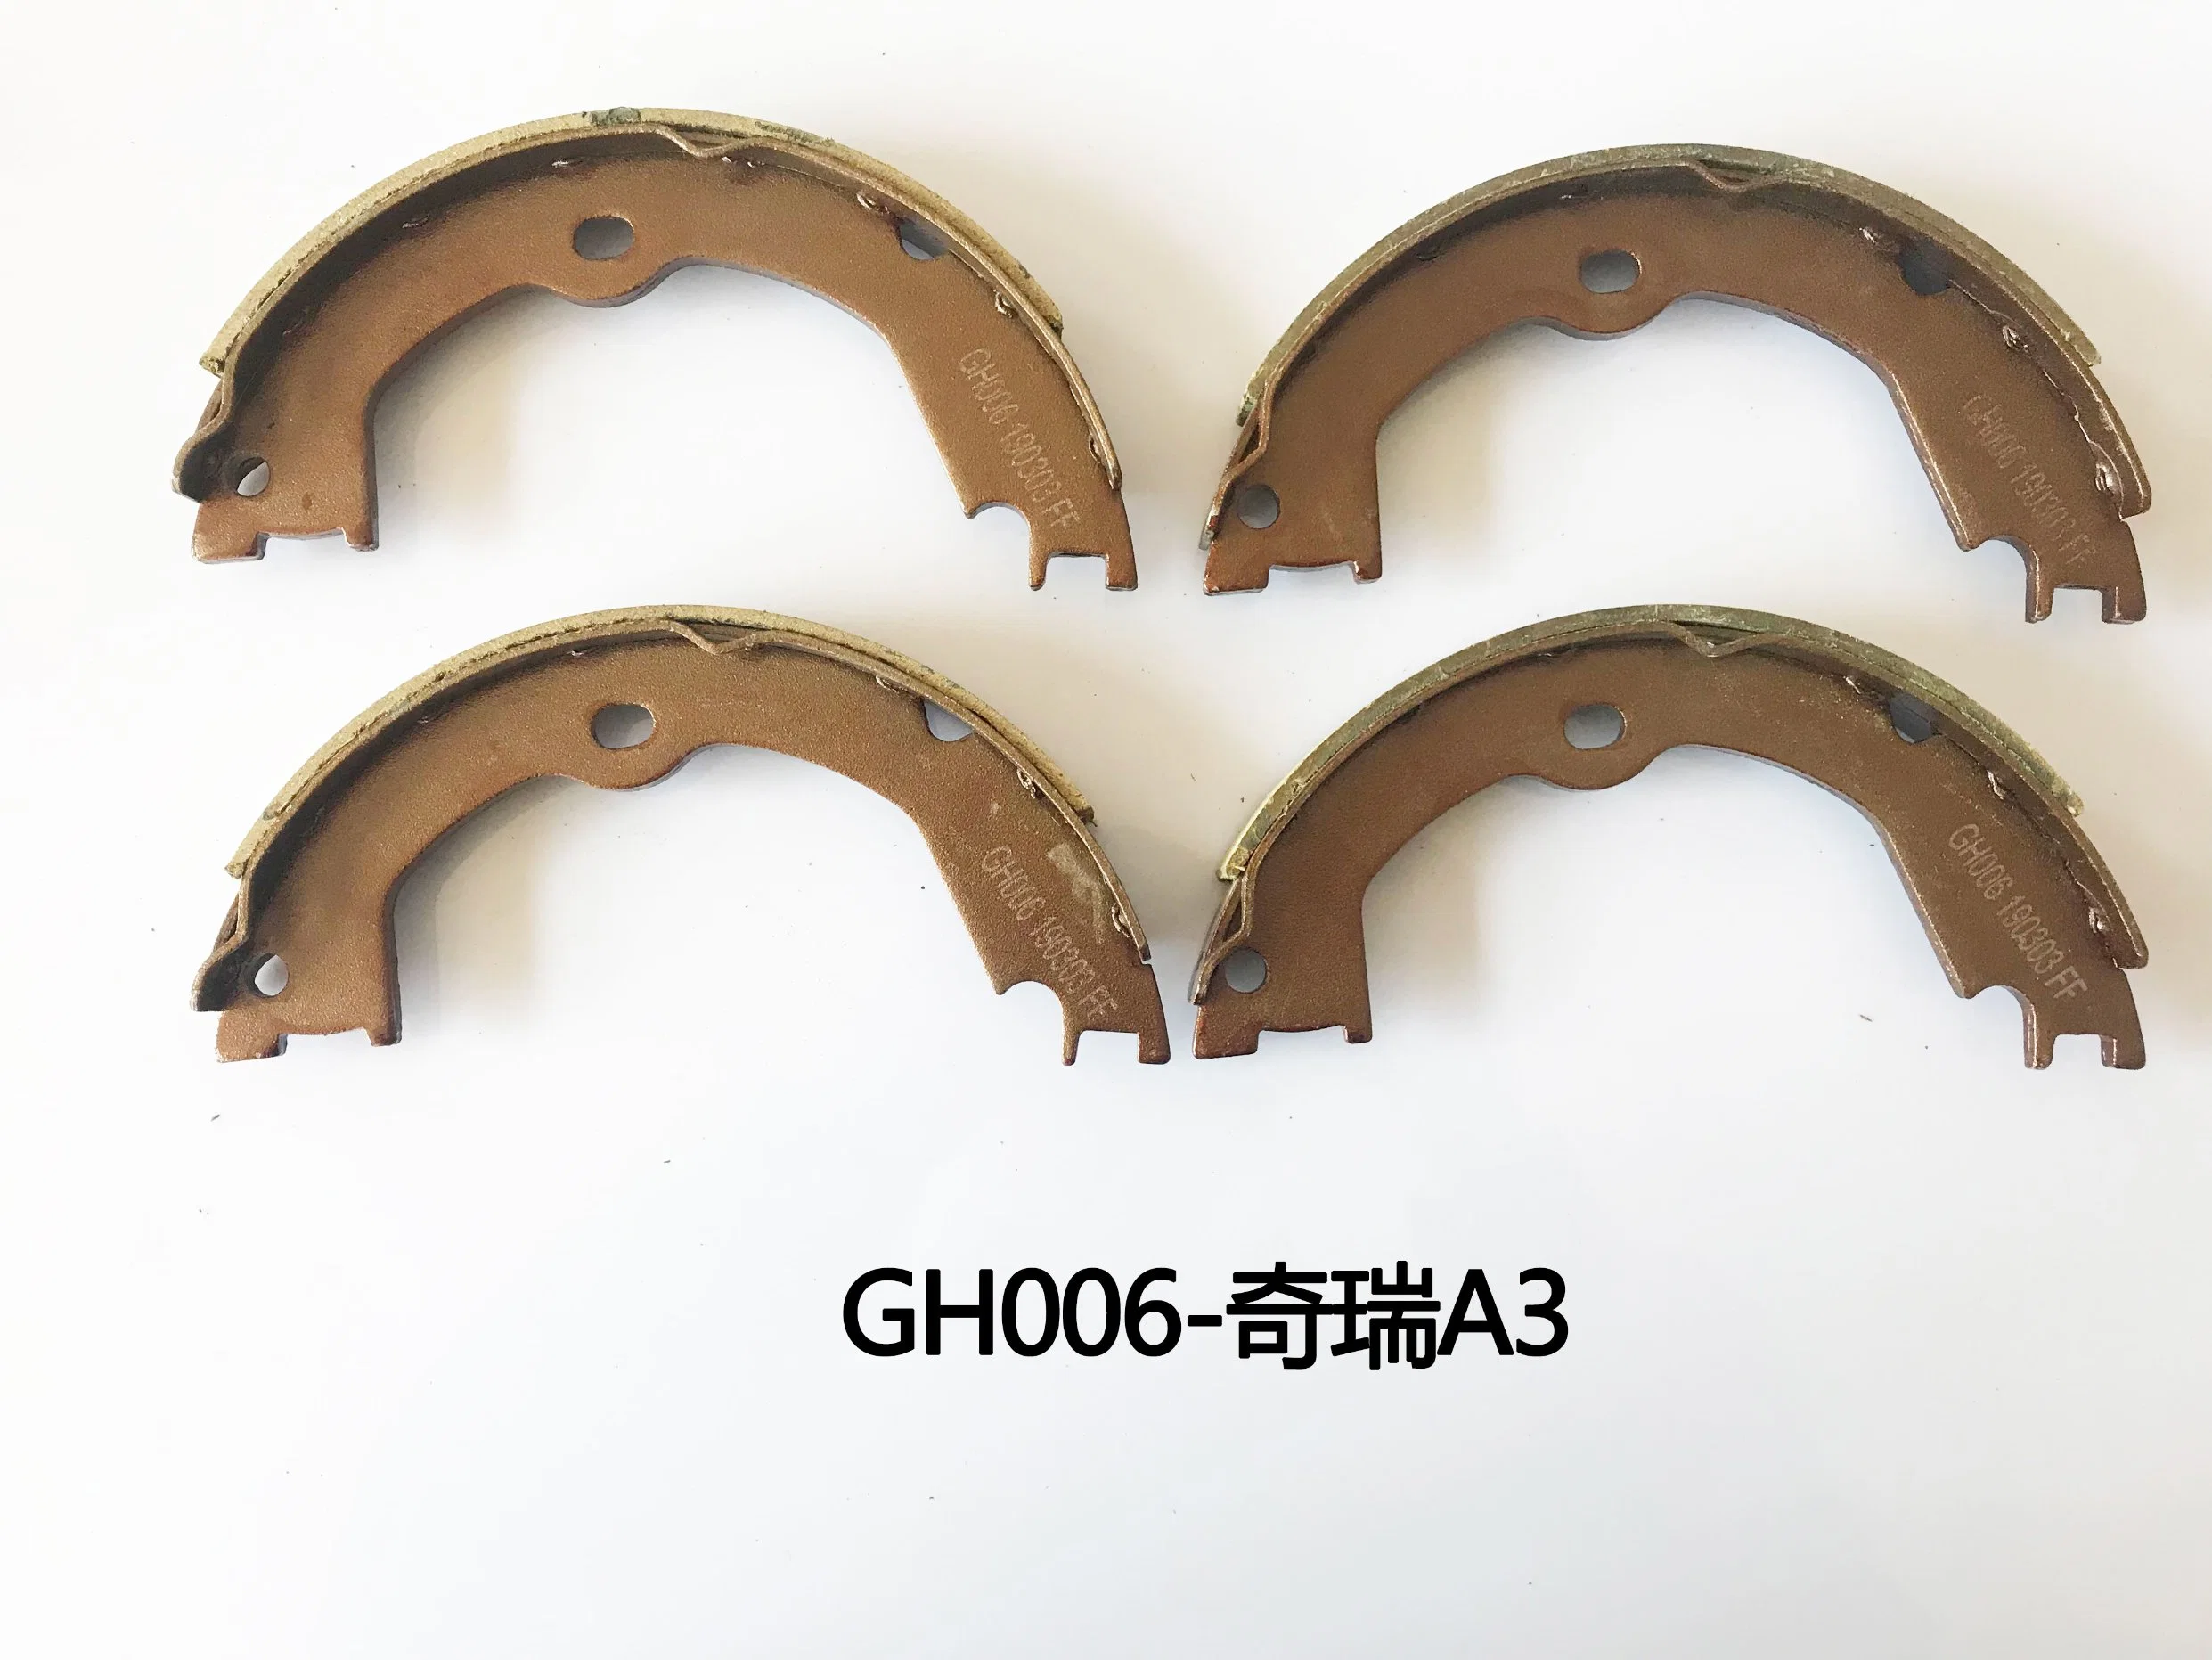 Keramik hochwertige Auto-Bremsschuhe für Chrey; Autoteile ISO9001